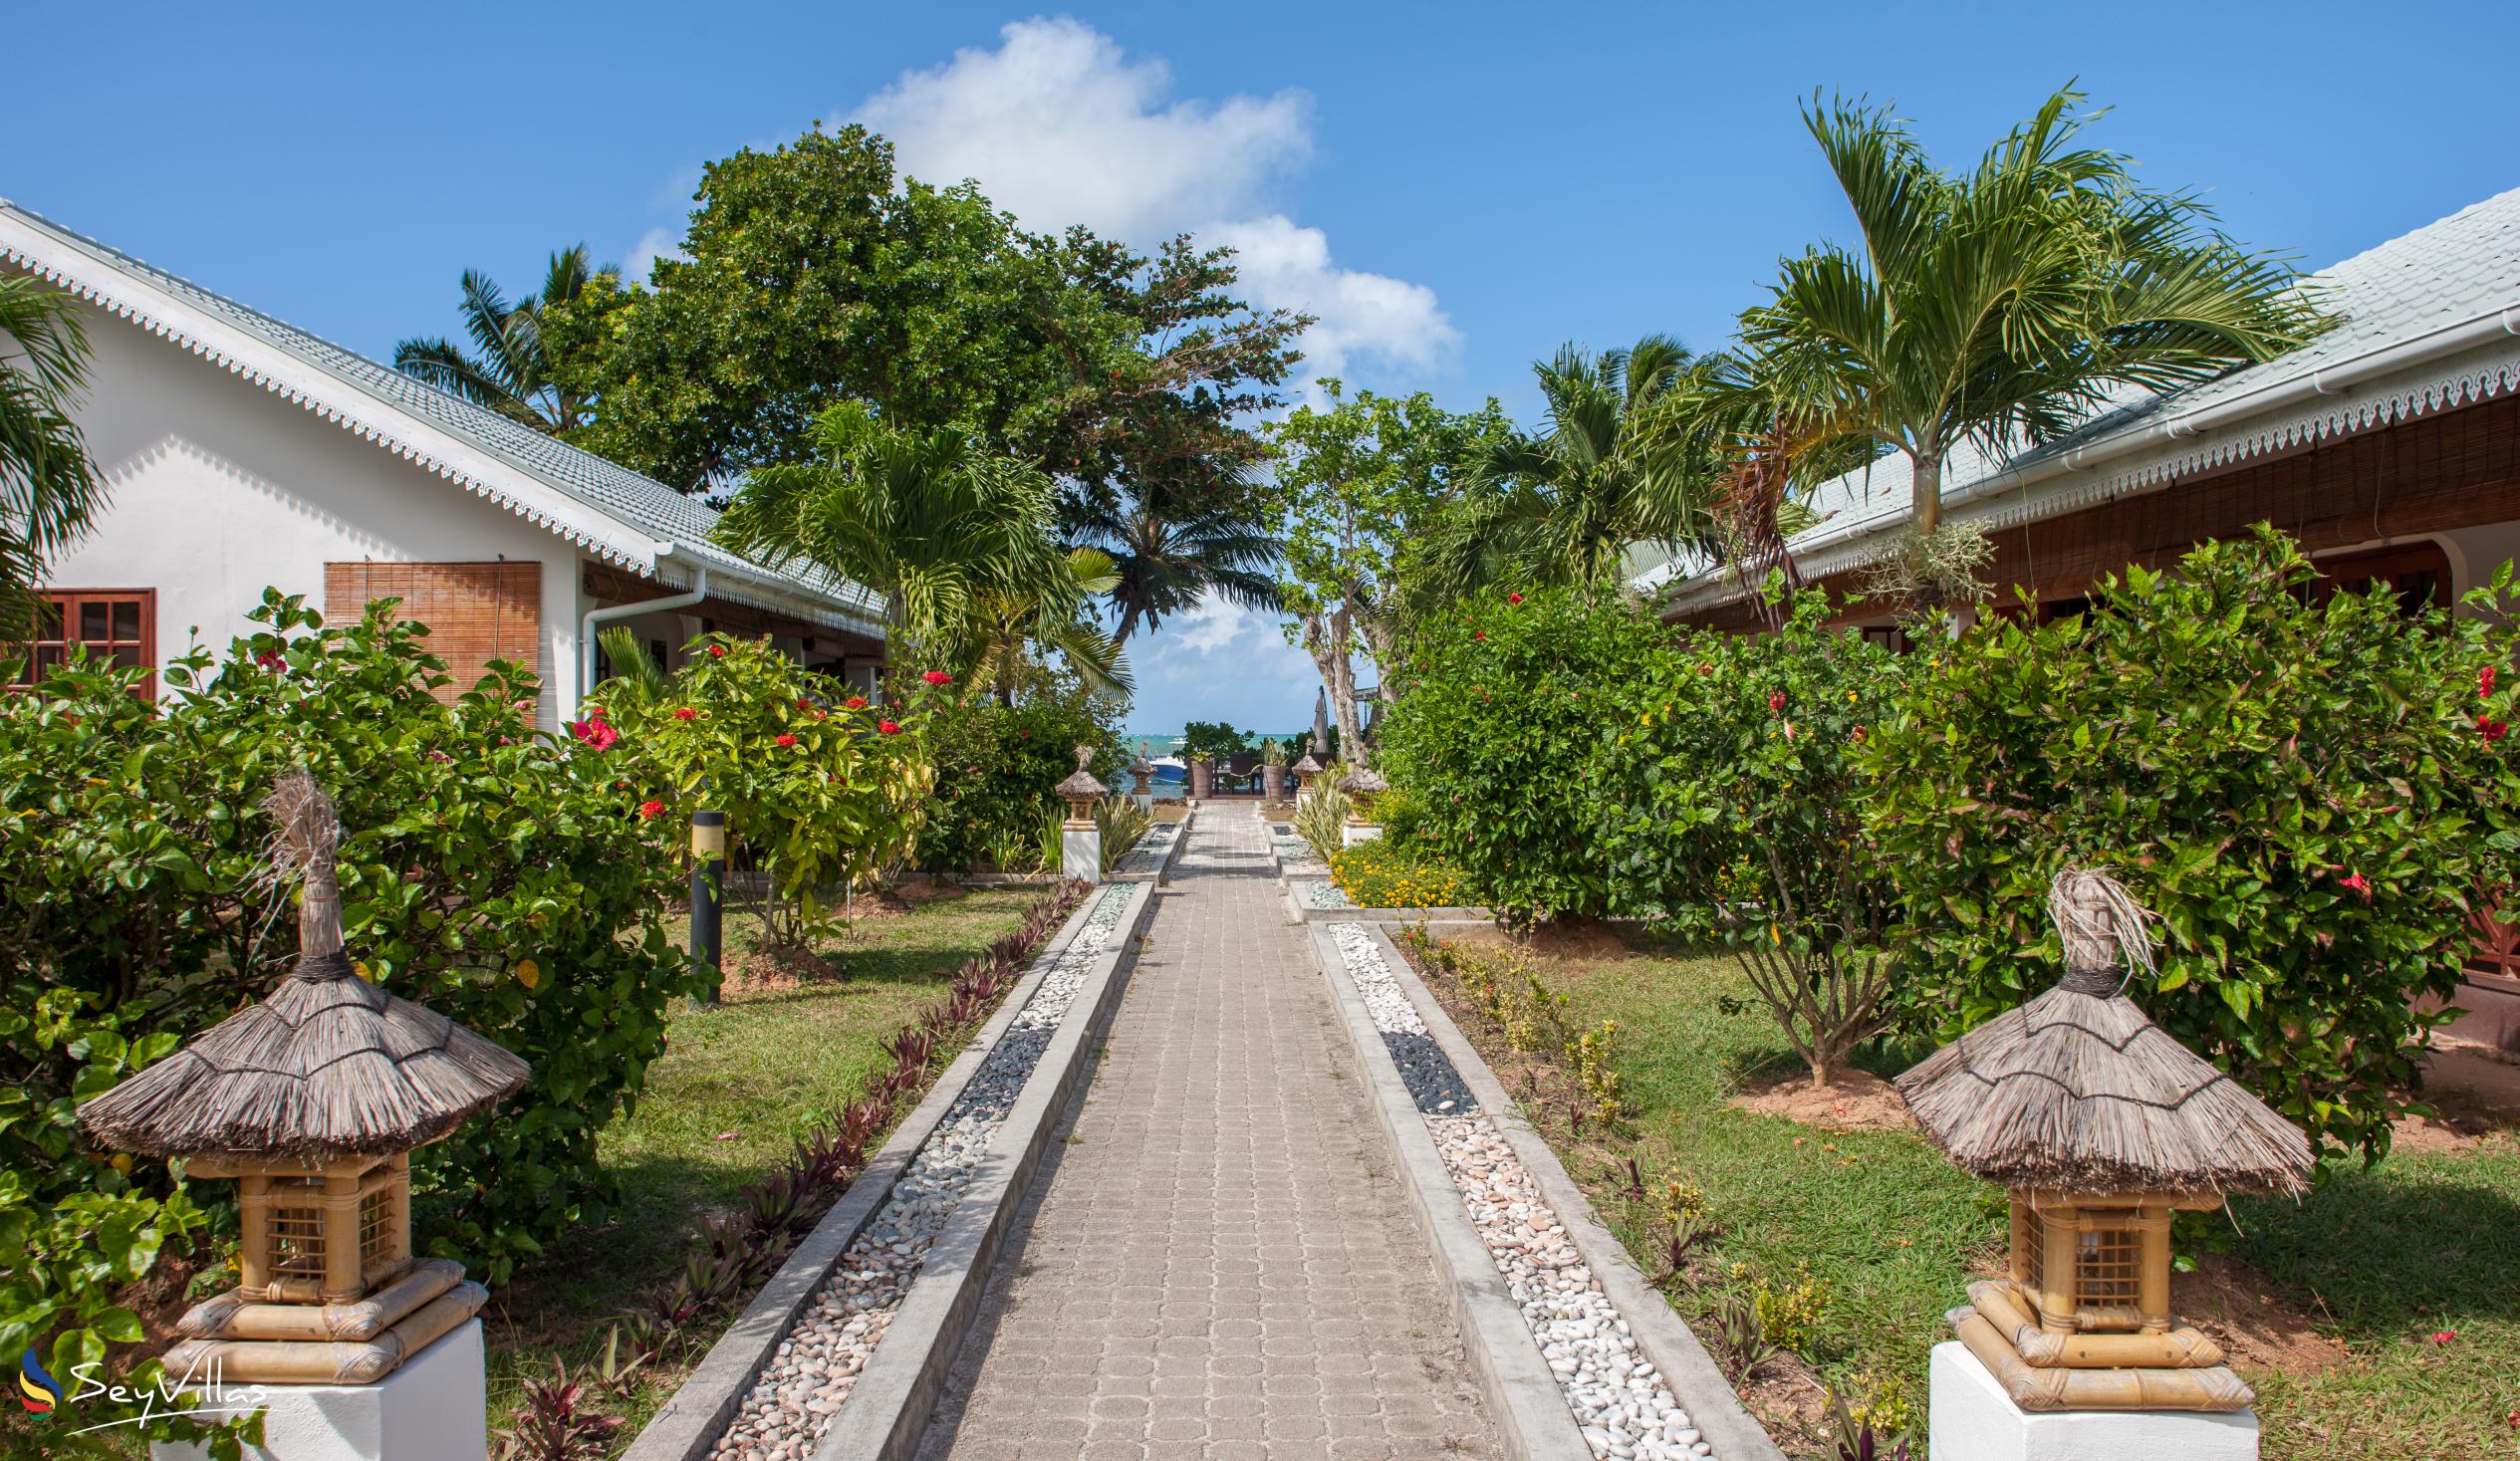 Photo 5: Villas de Mer - Outdoor area - Praslin (Seychelles)